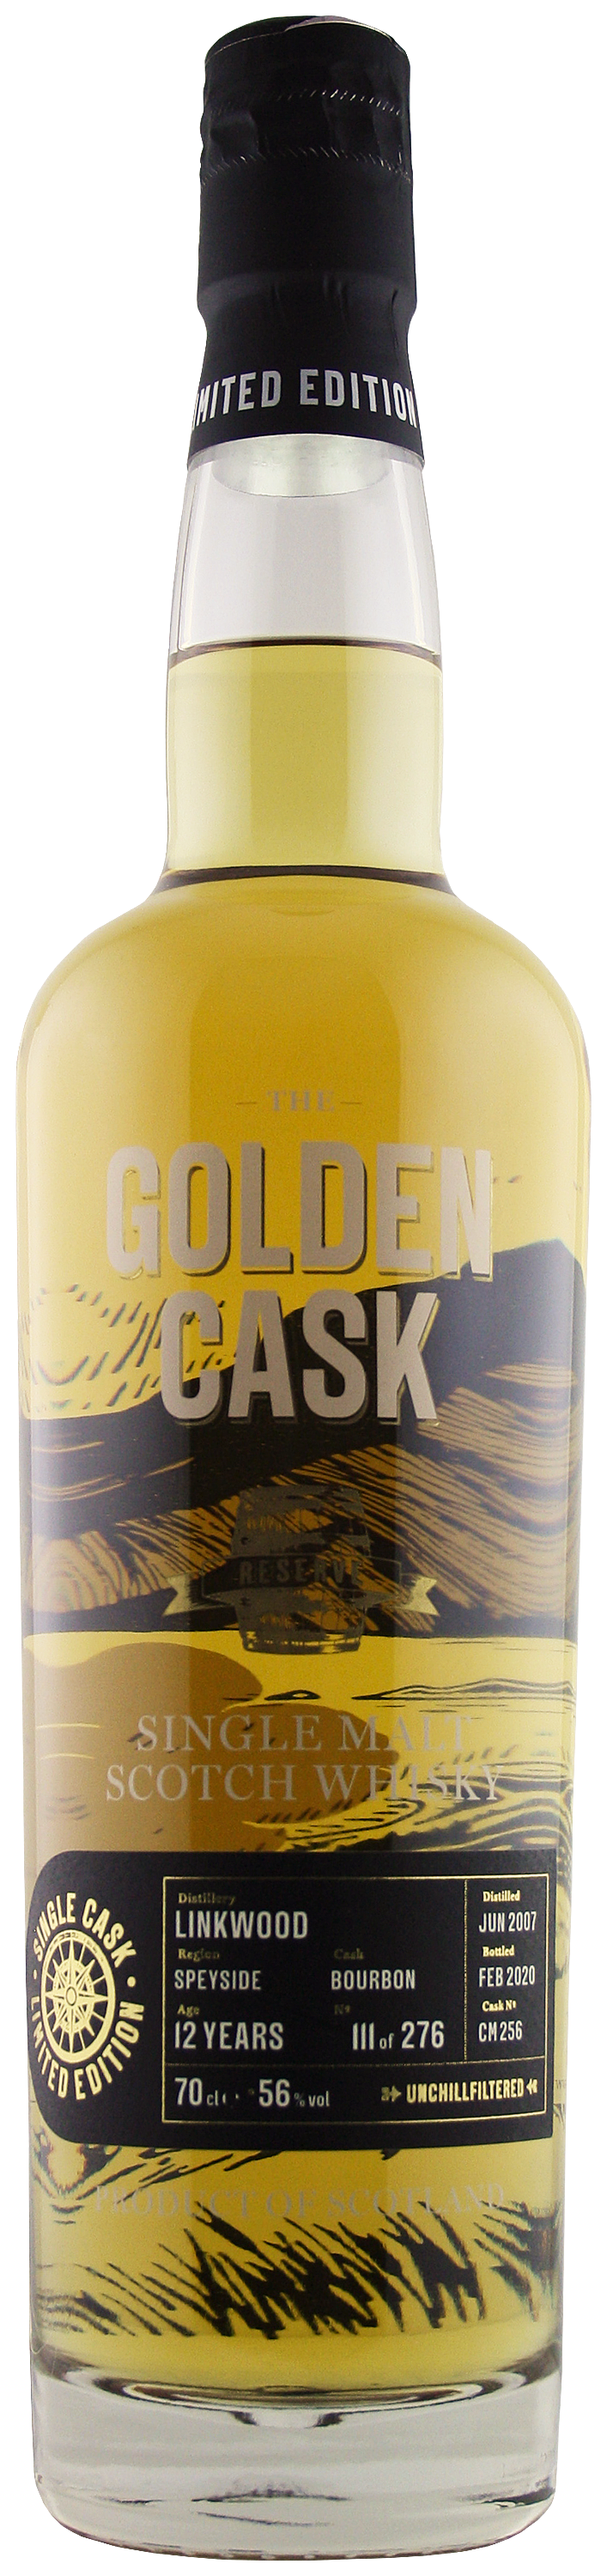 The Golden Cask Linkwood 12 Years